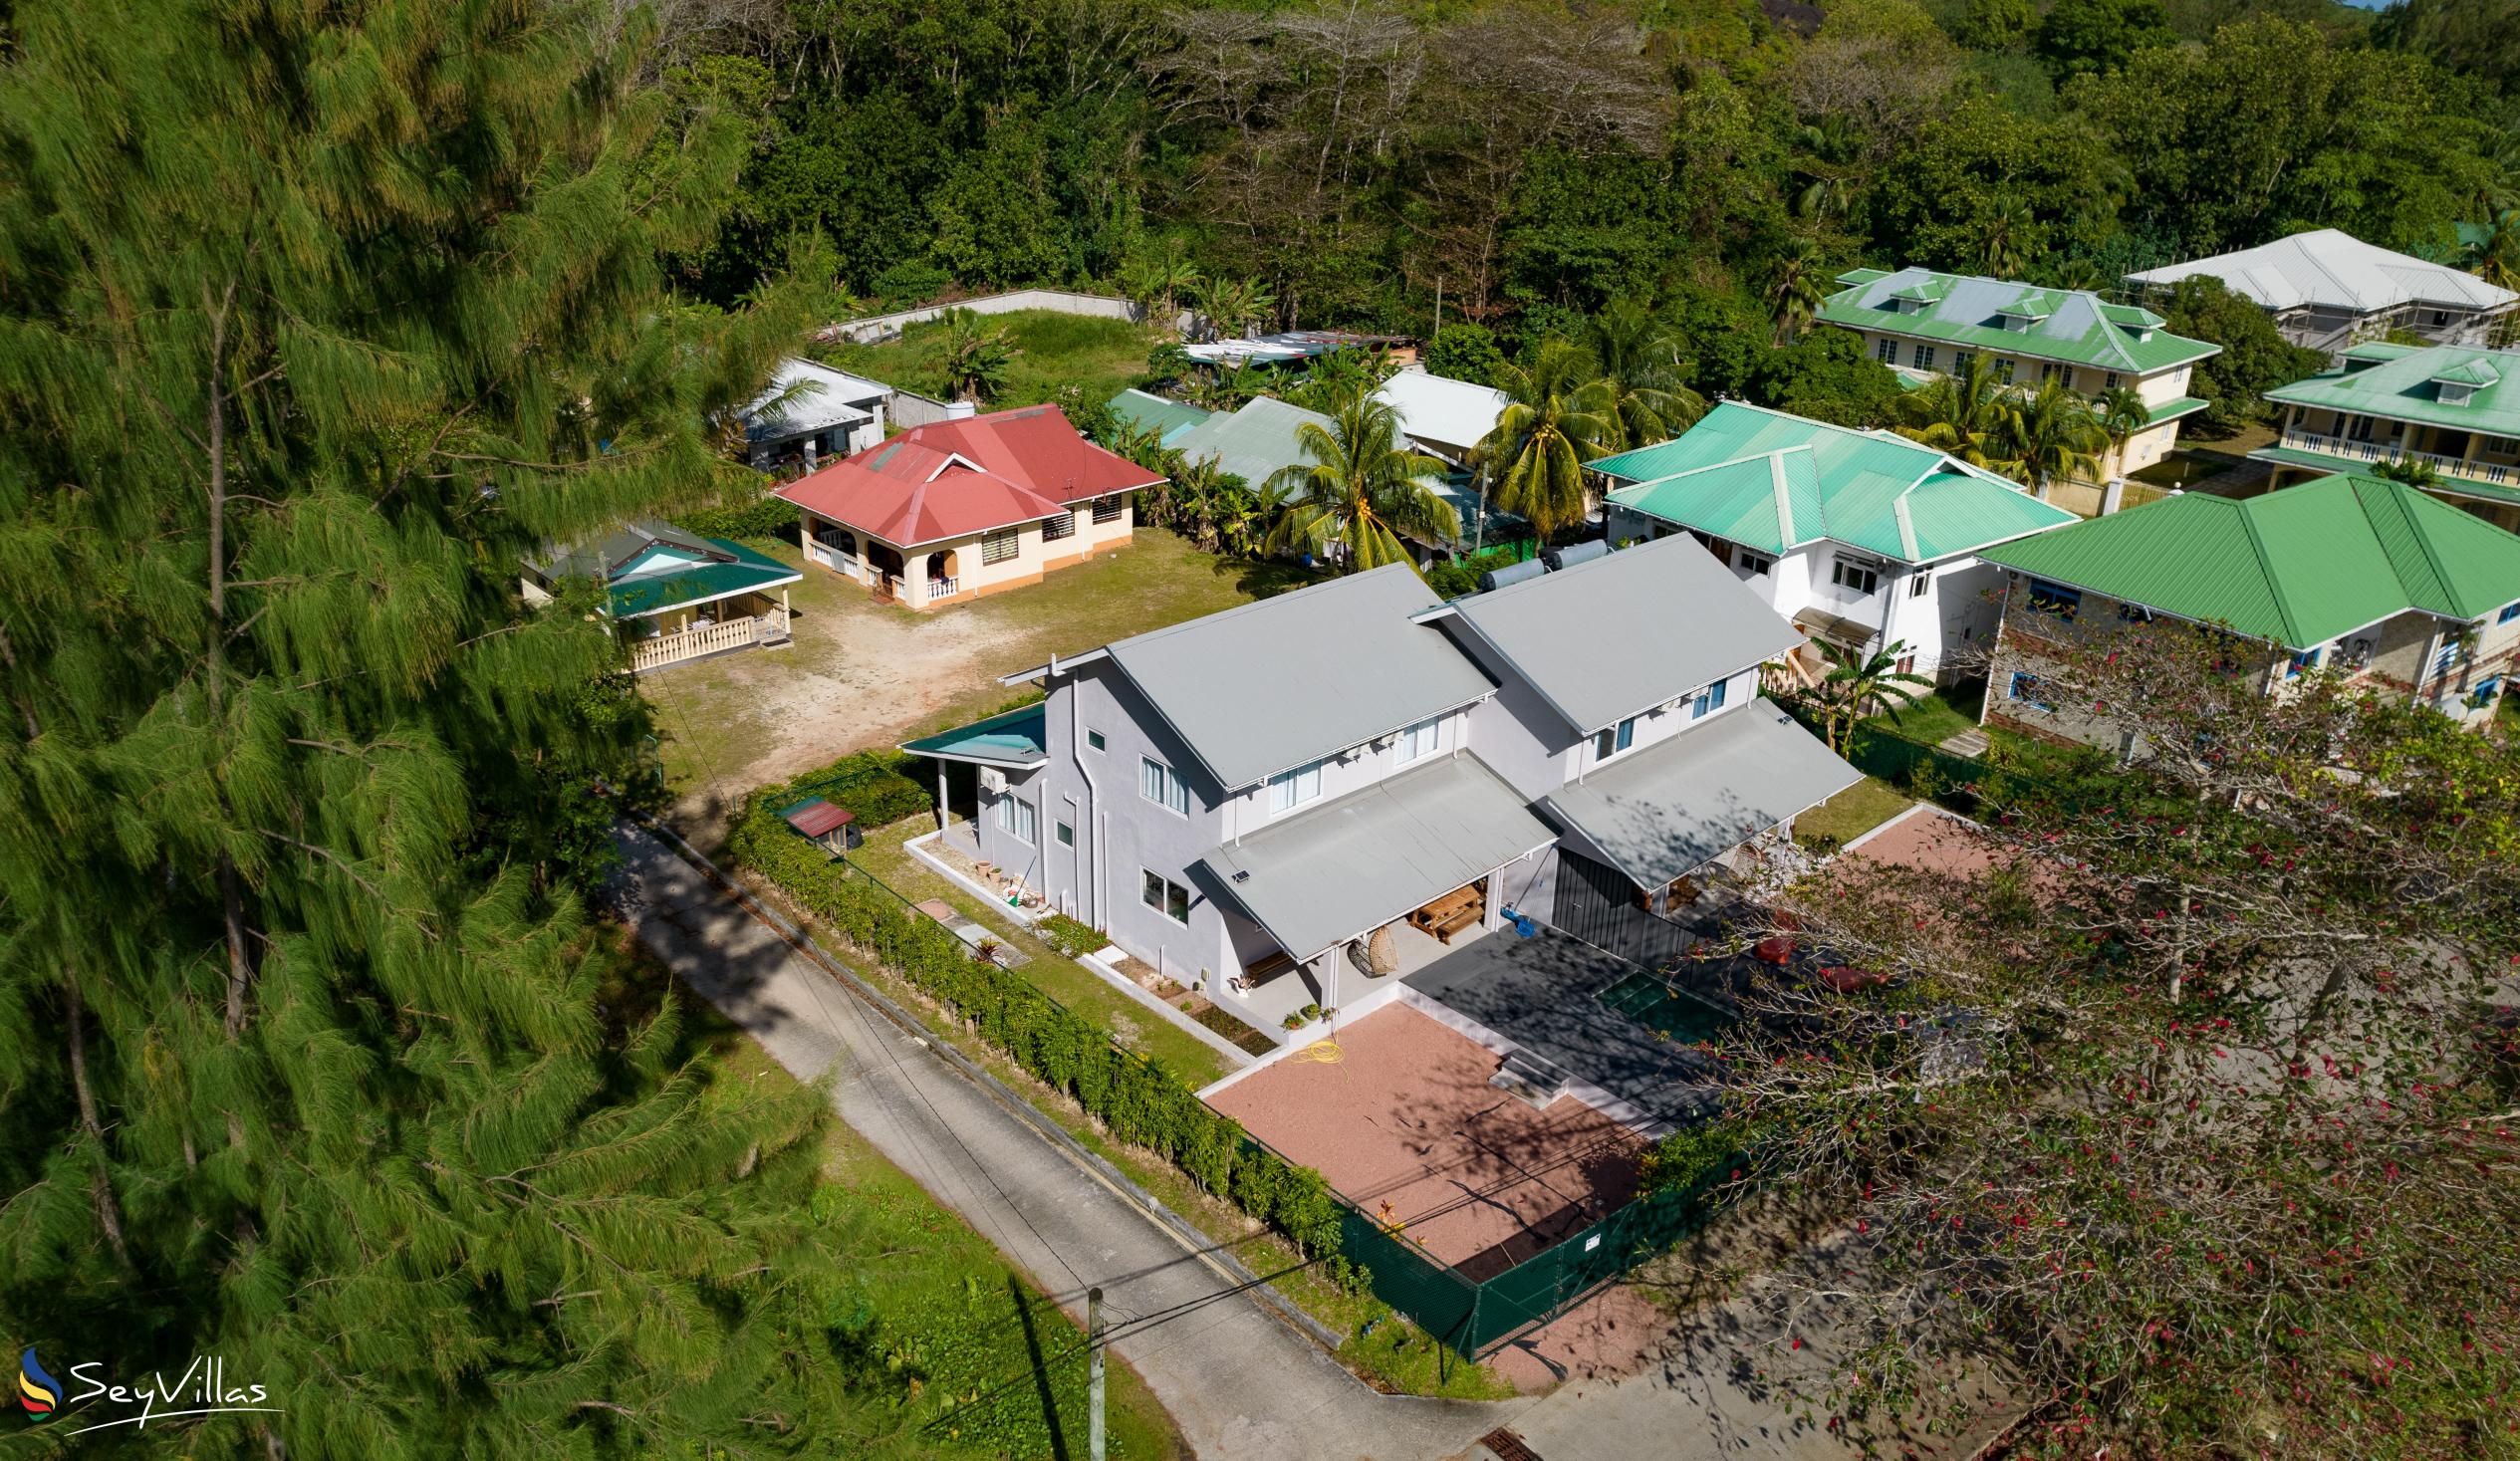 Foto 16: Maison Marie-Jeanne - Aussenbereich - Praslin (Seychellen)